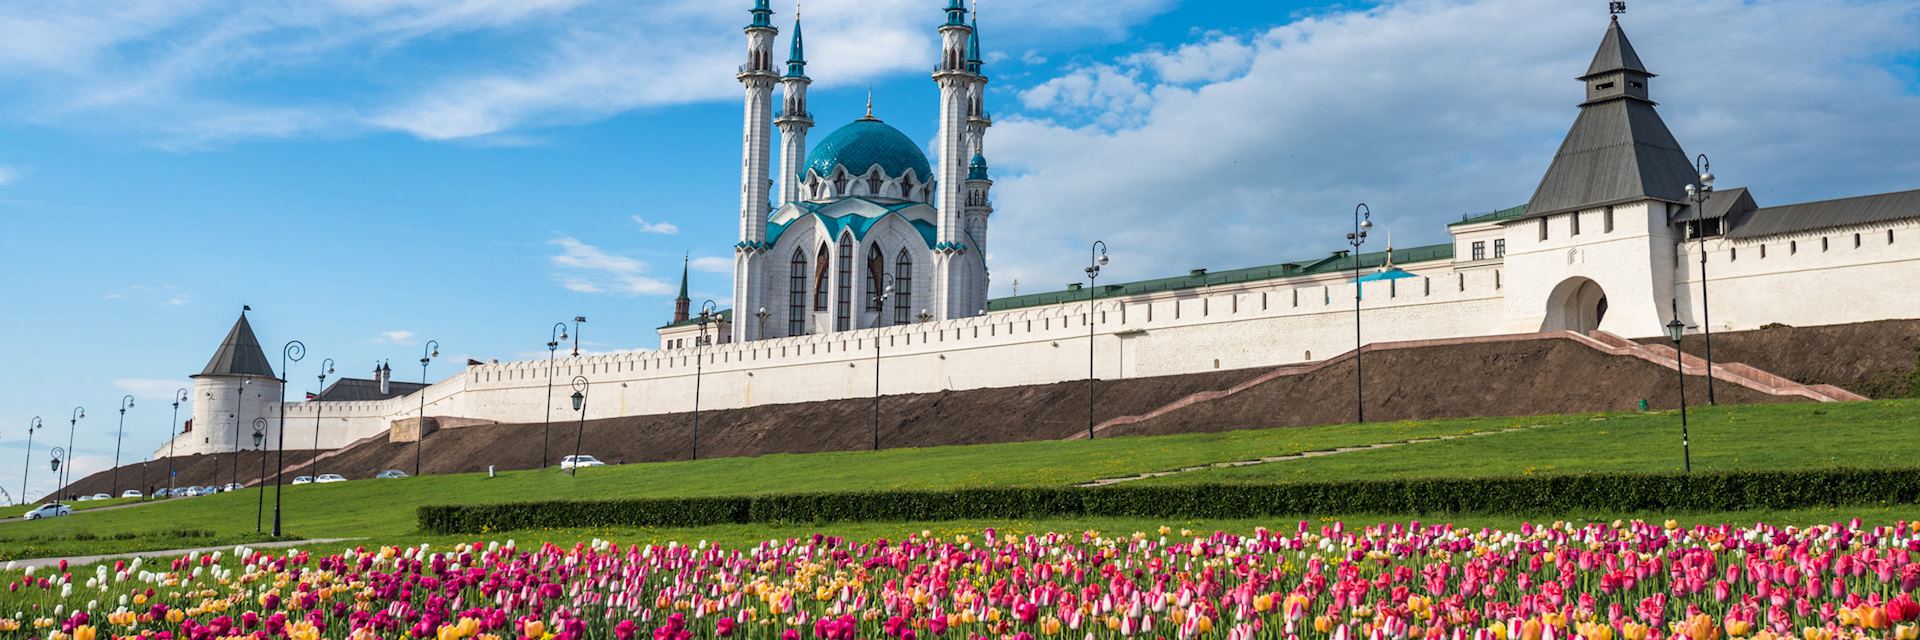 Kul Sharif mosque, Kazan